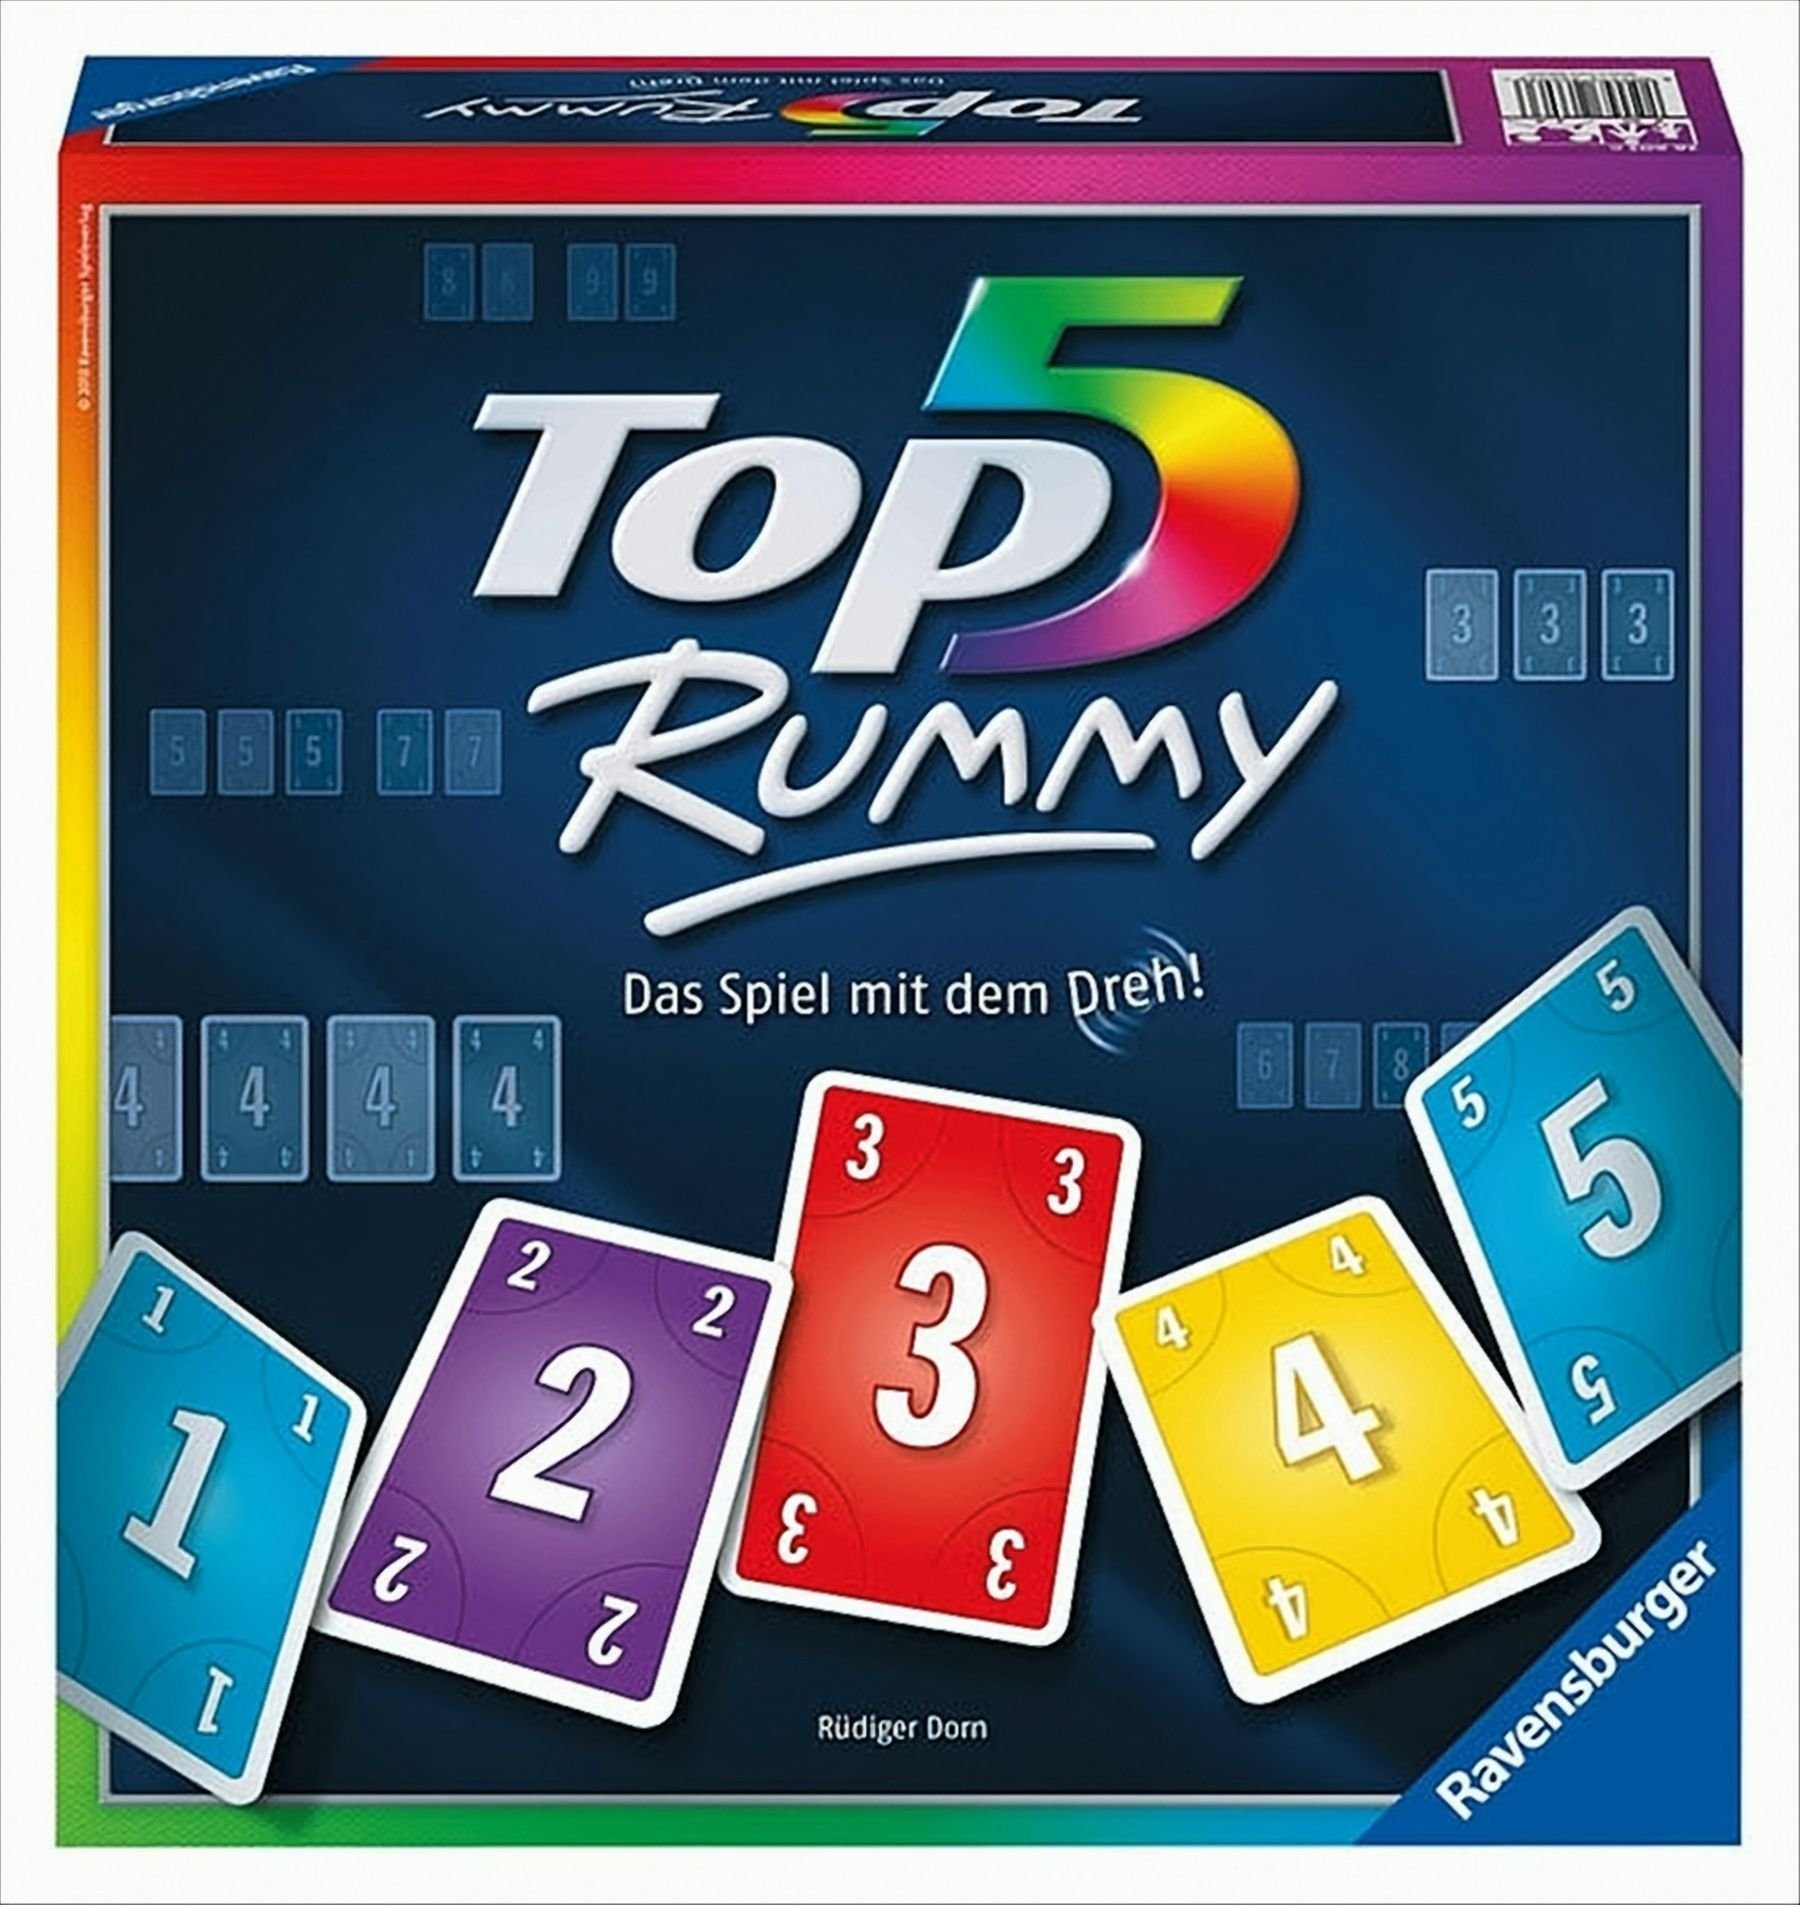 Ravensburger Spiel, Top 5 Rummy - Das Spiel mit dem Dreh! Top 5 Rummy - Das Spiel mit dem Dreh!